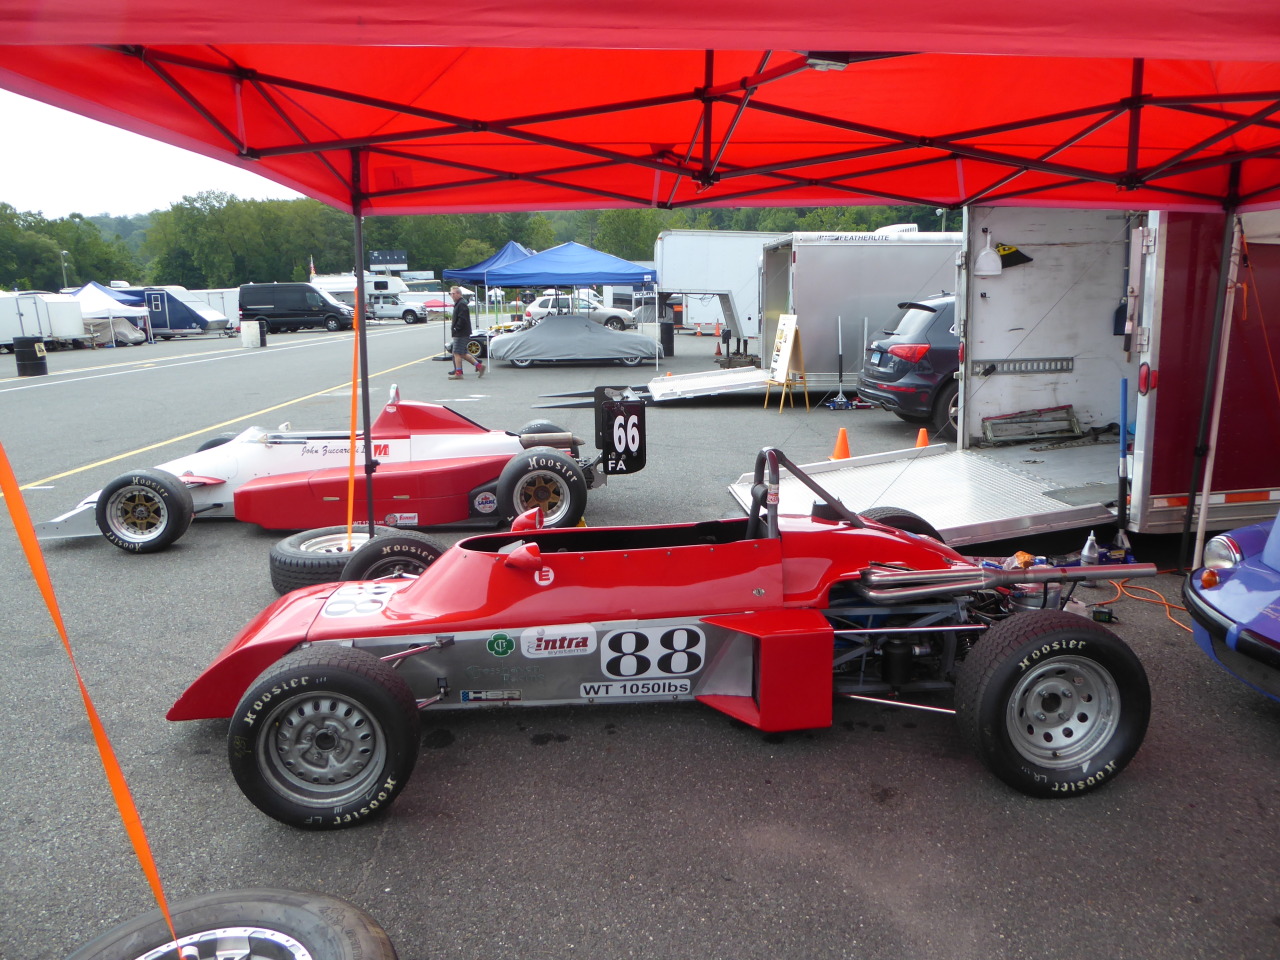 Hawke DL9, a Formula Ford car. #classic#race#car#cars#auto#car show#hawke#dl9#lime rock